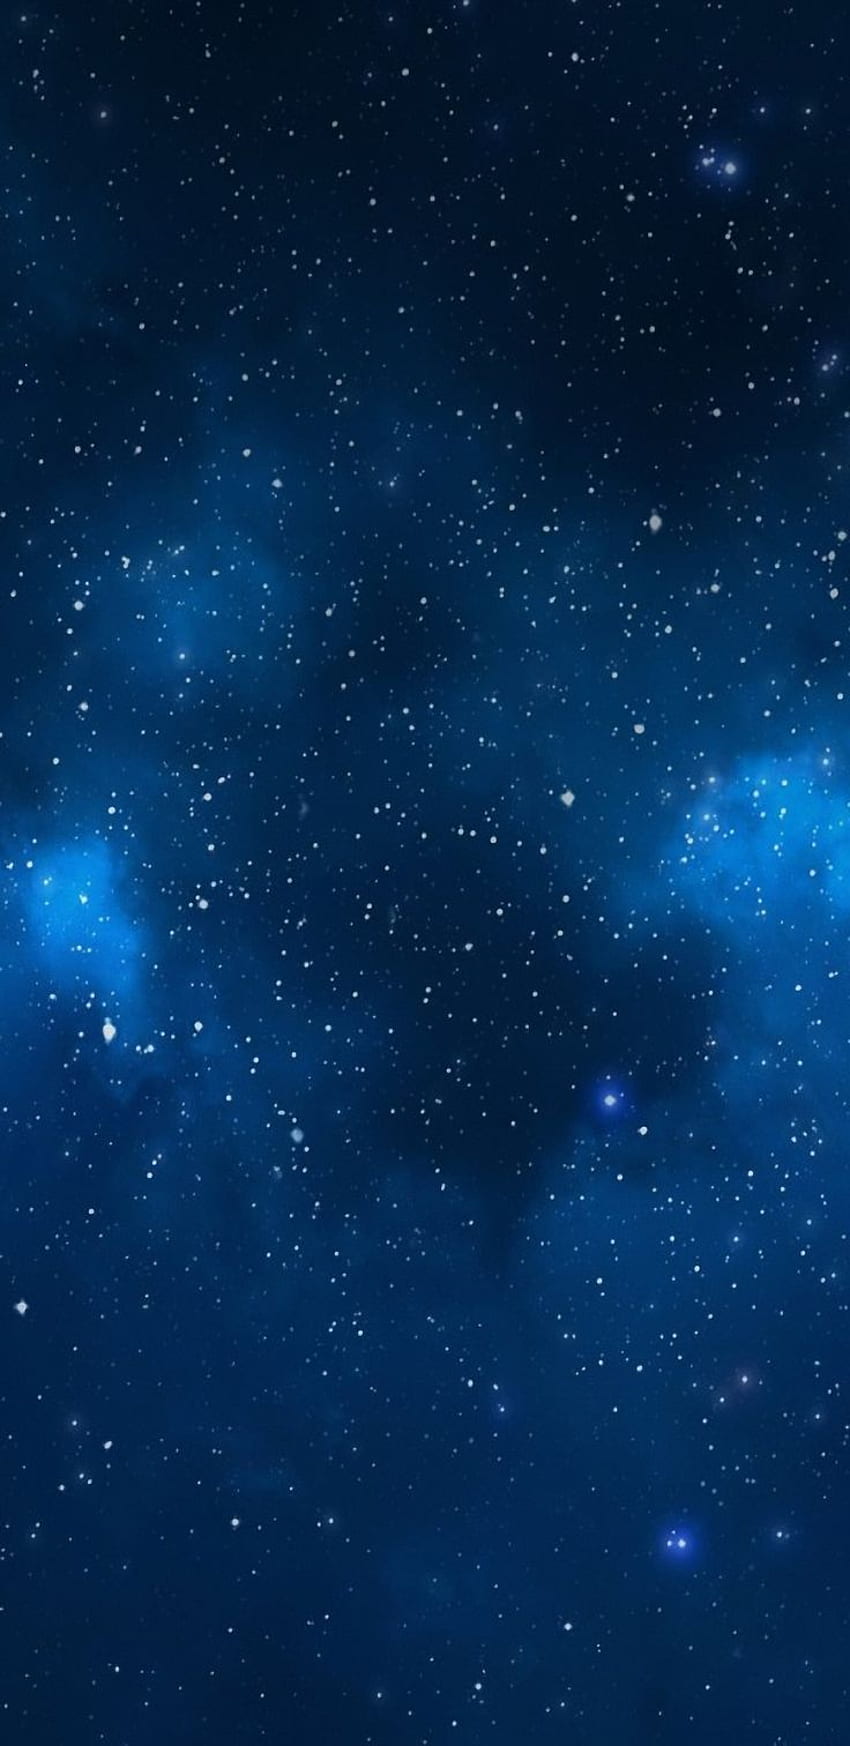 Karanlık, mavi, galaksi, sakin, güzellik, doğa, gece, gökyüzü, yıldızlar, Samsung. Mavi arka plan , Koyu mavi , Mavi galaksi , Samsung Galaxy Star HD telefon duvar kağıdı